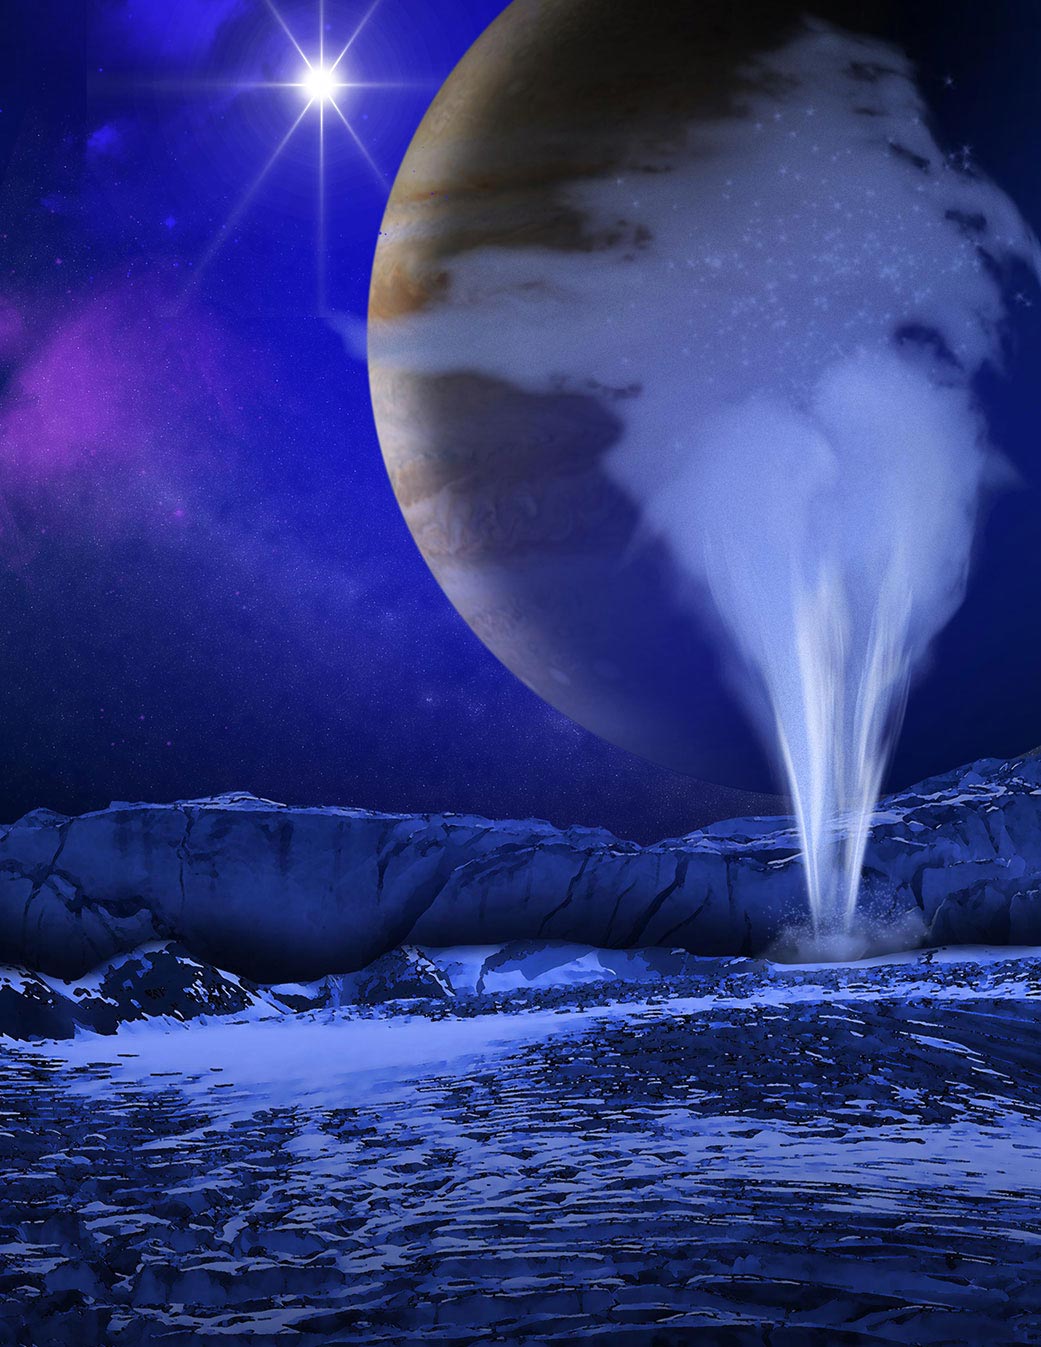 木卫二欧罗巴上水的喷发很可能来自浅层的湖泊 而非地下方的全球海洋